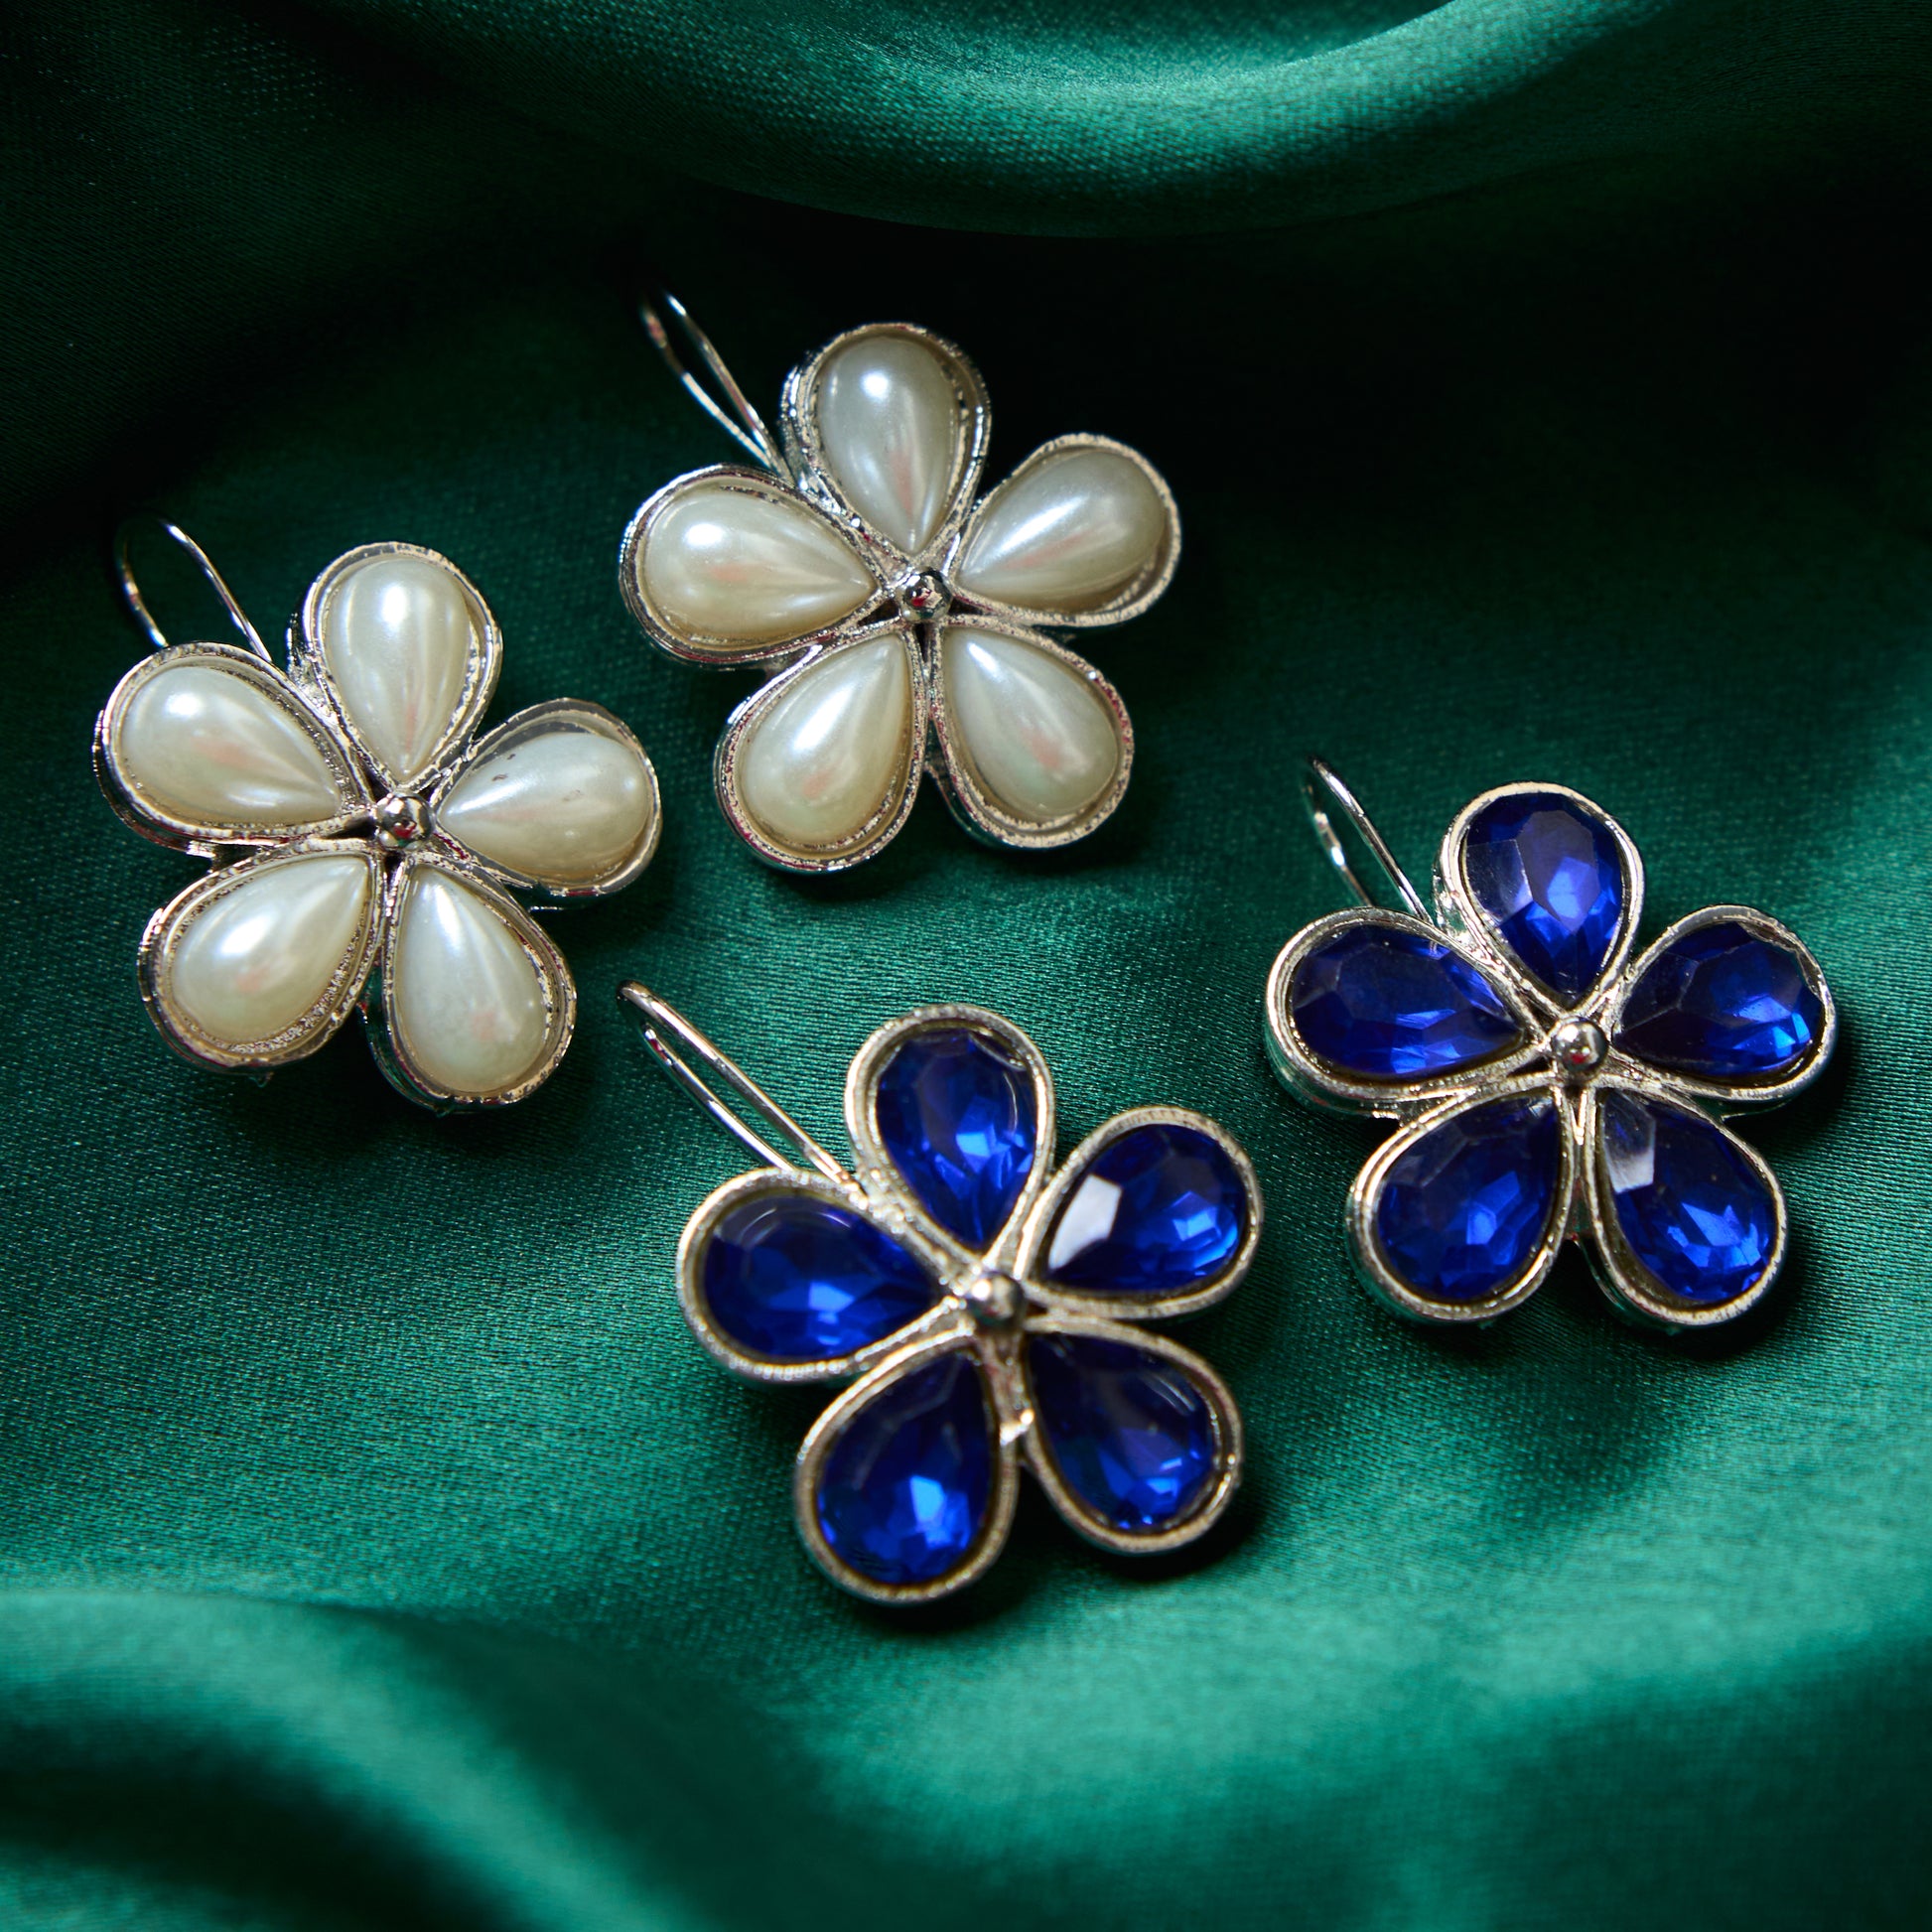 Moonstruck Combo flower hook earrings (Pearl & Blue) - www.MoonstruckINC.com